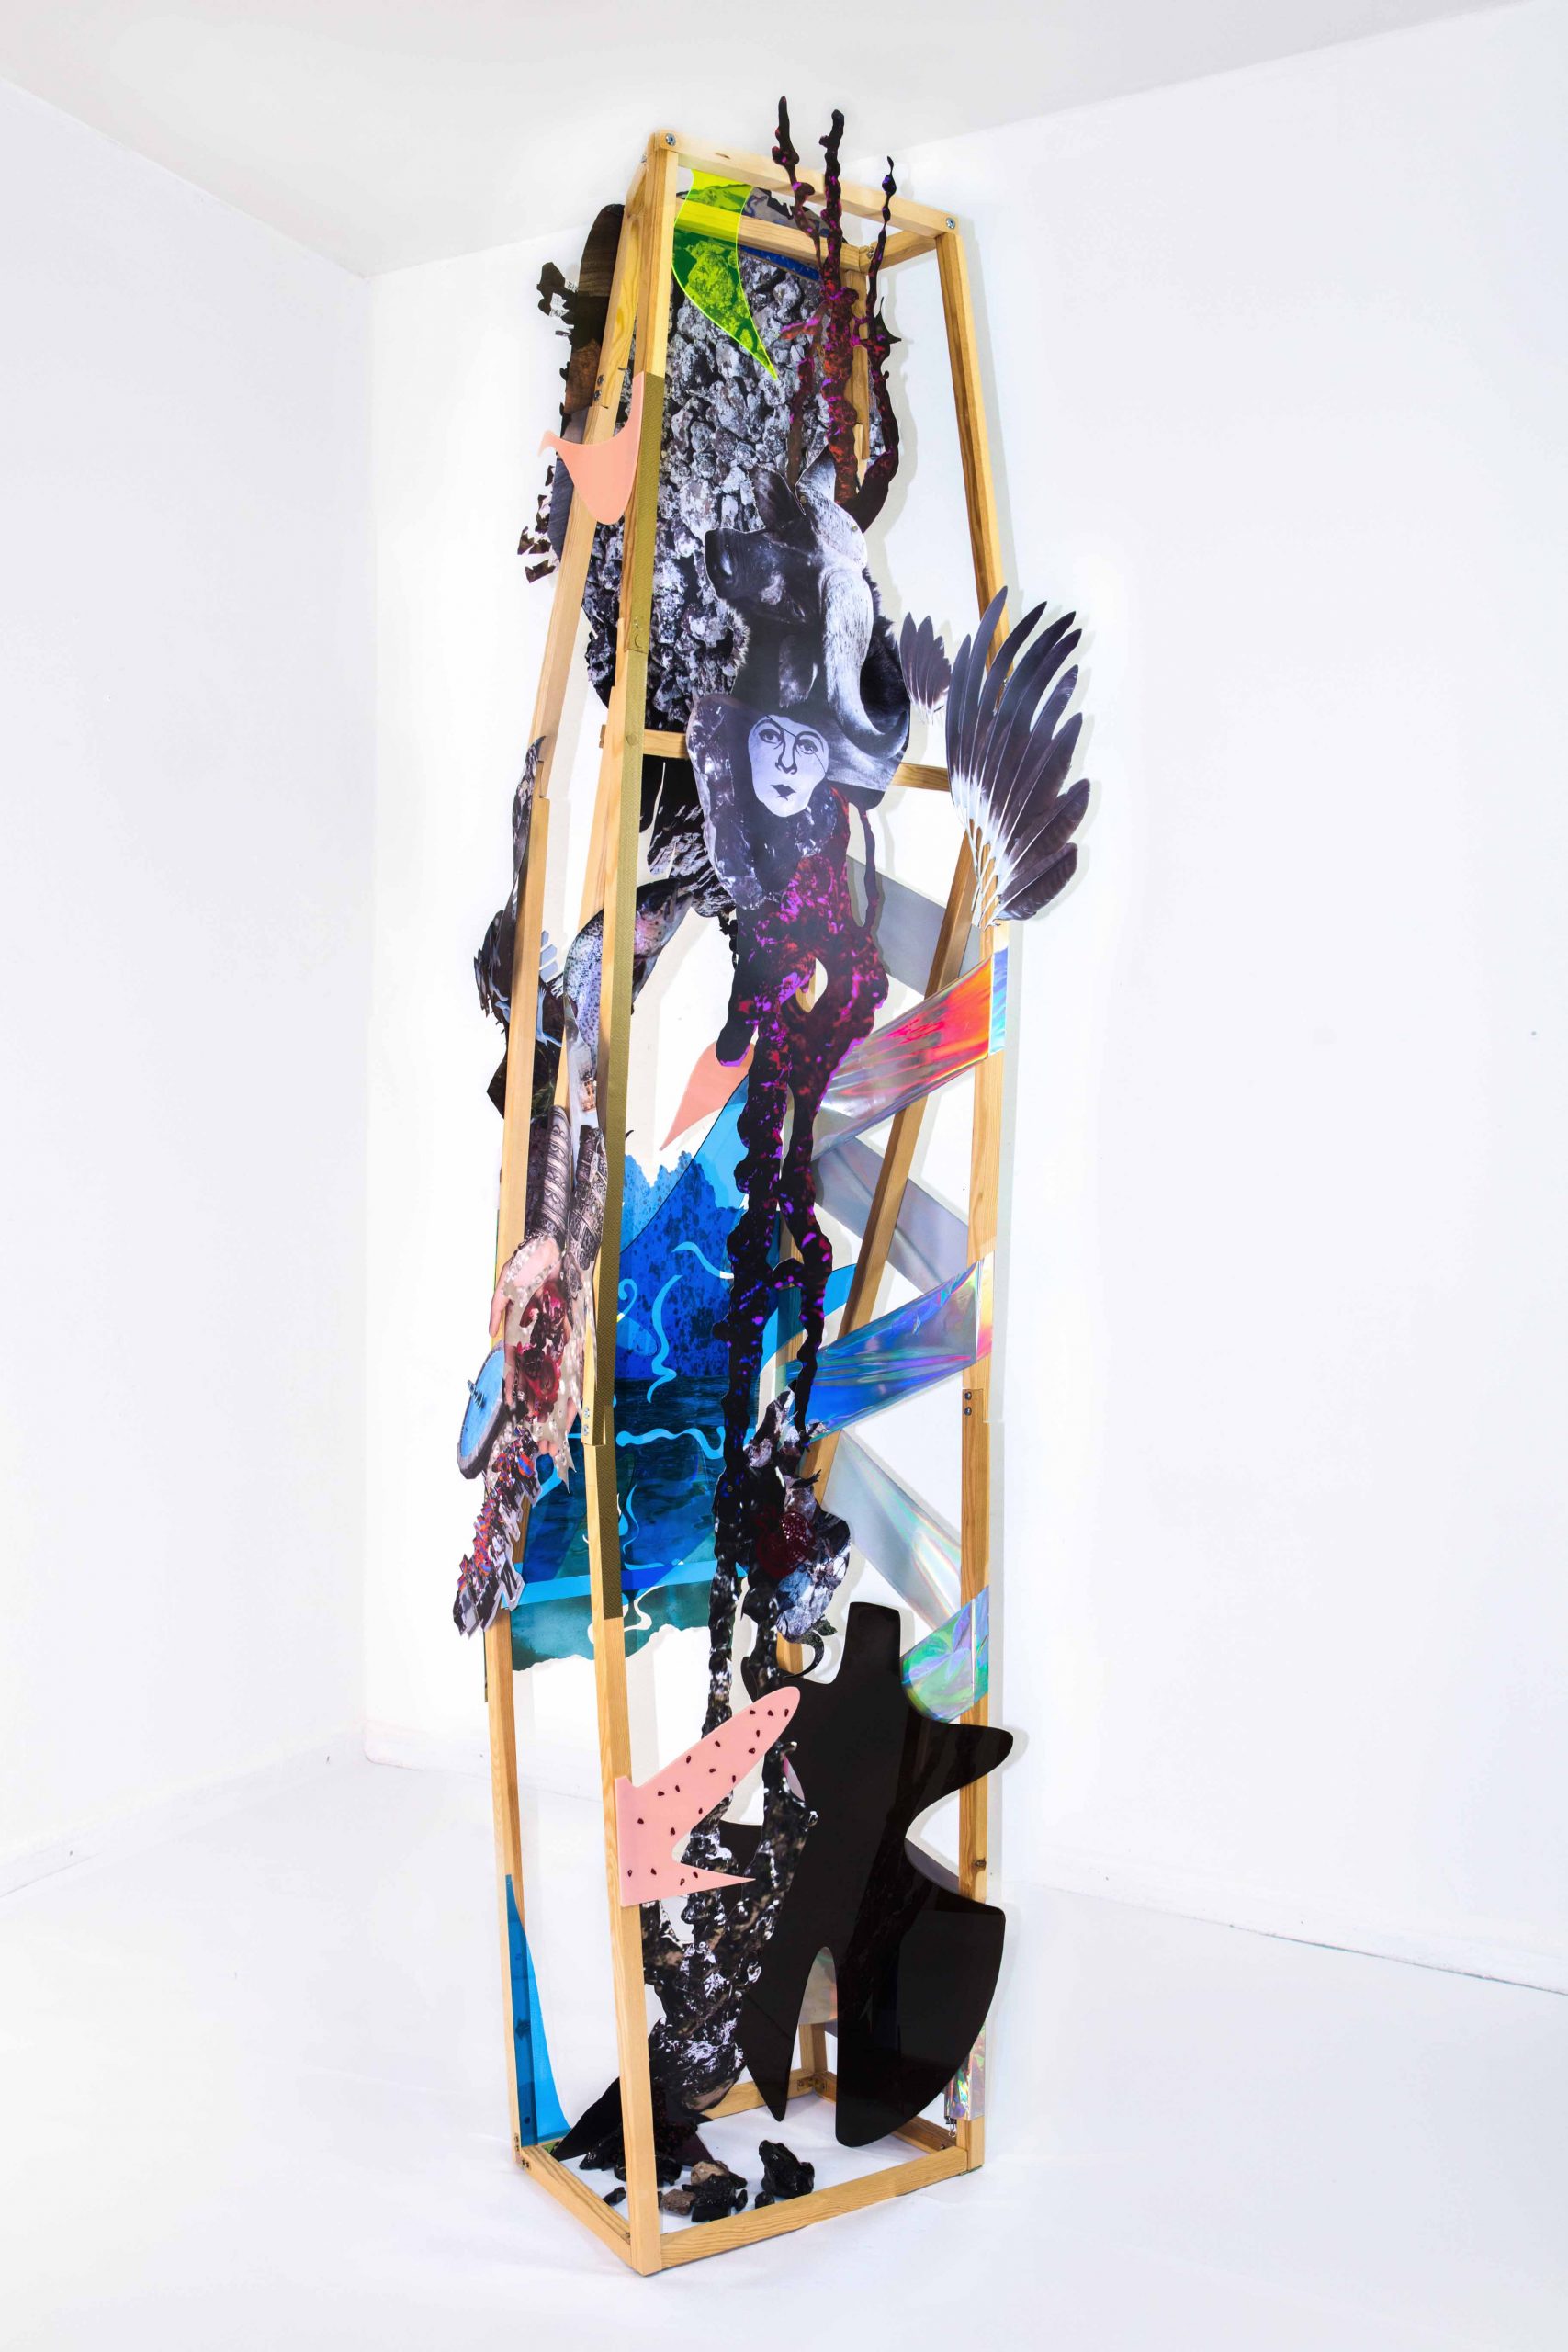 Komplettansicht der Plastik "Selbstgespräche mit Frau A" bestehend aus Holz, Papier, Plexiglas und Klebefolien. Geschaffen von der Künstlerin Wiebke Kirchner im Jahr 2019.